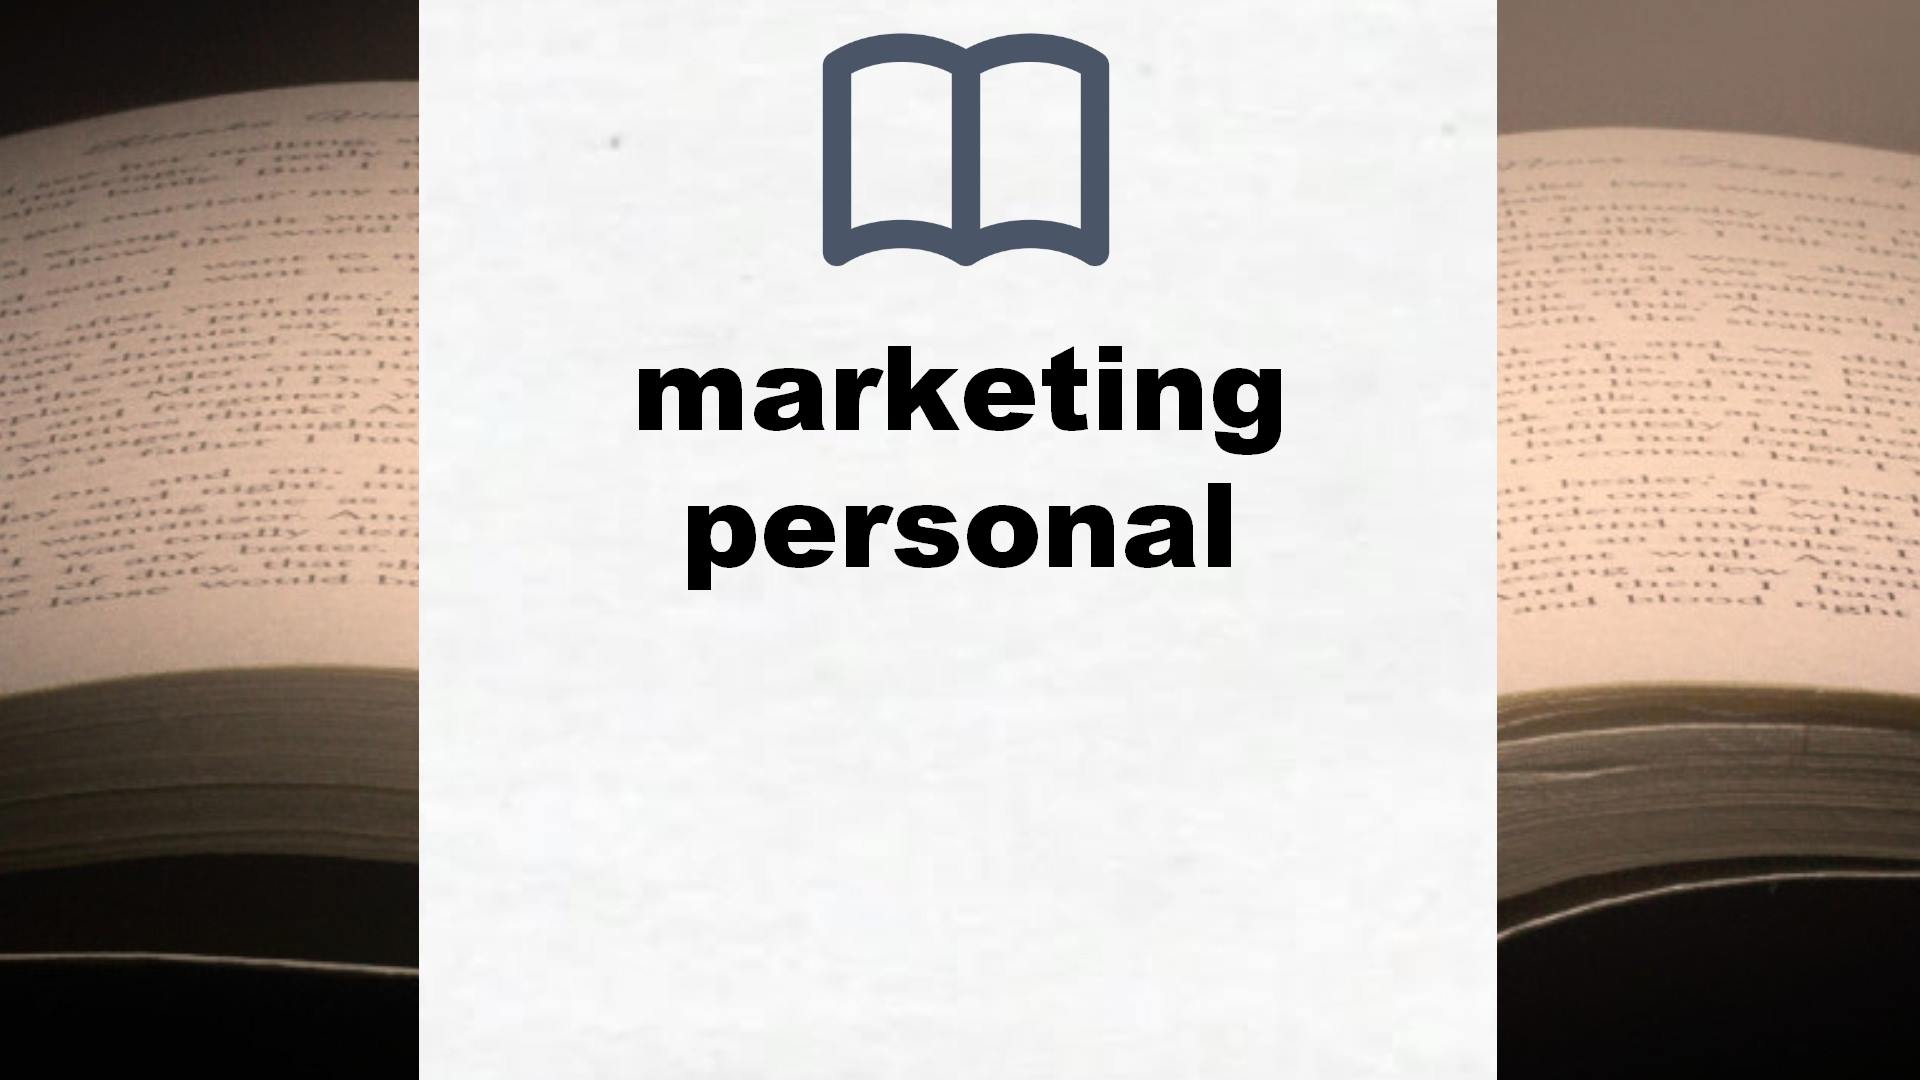 Libros sobre marketing personal